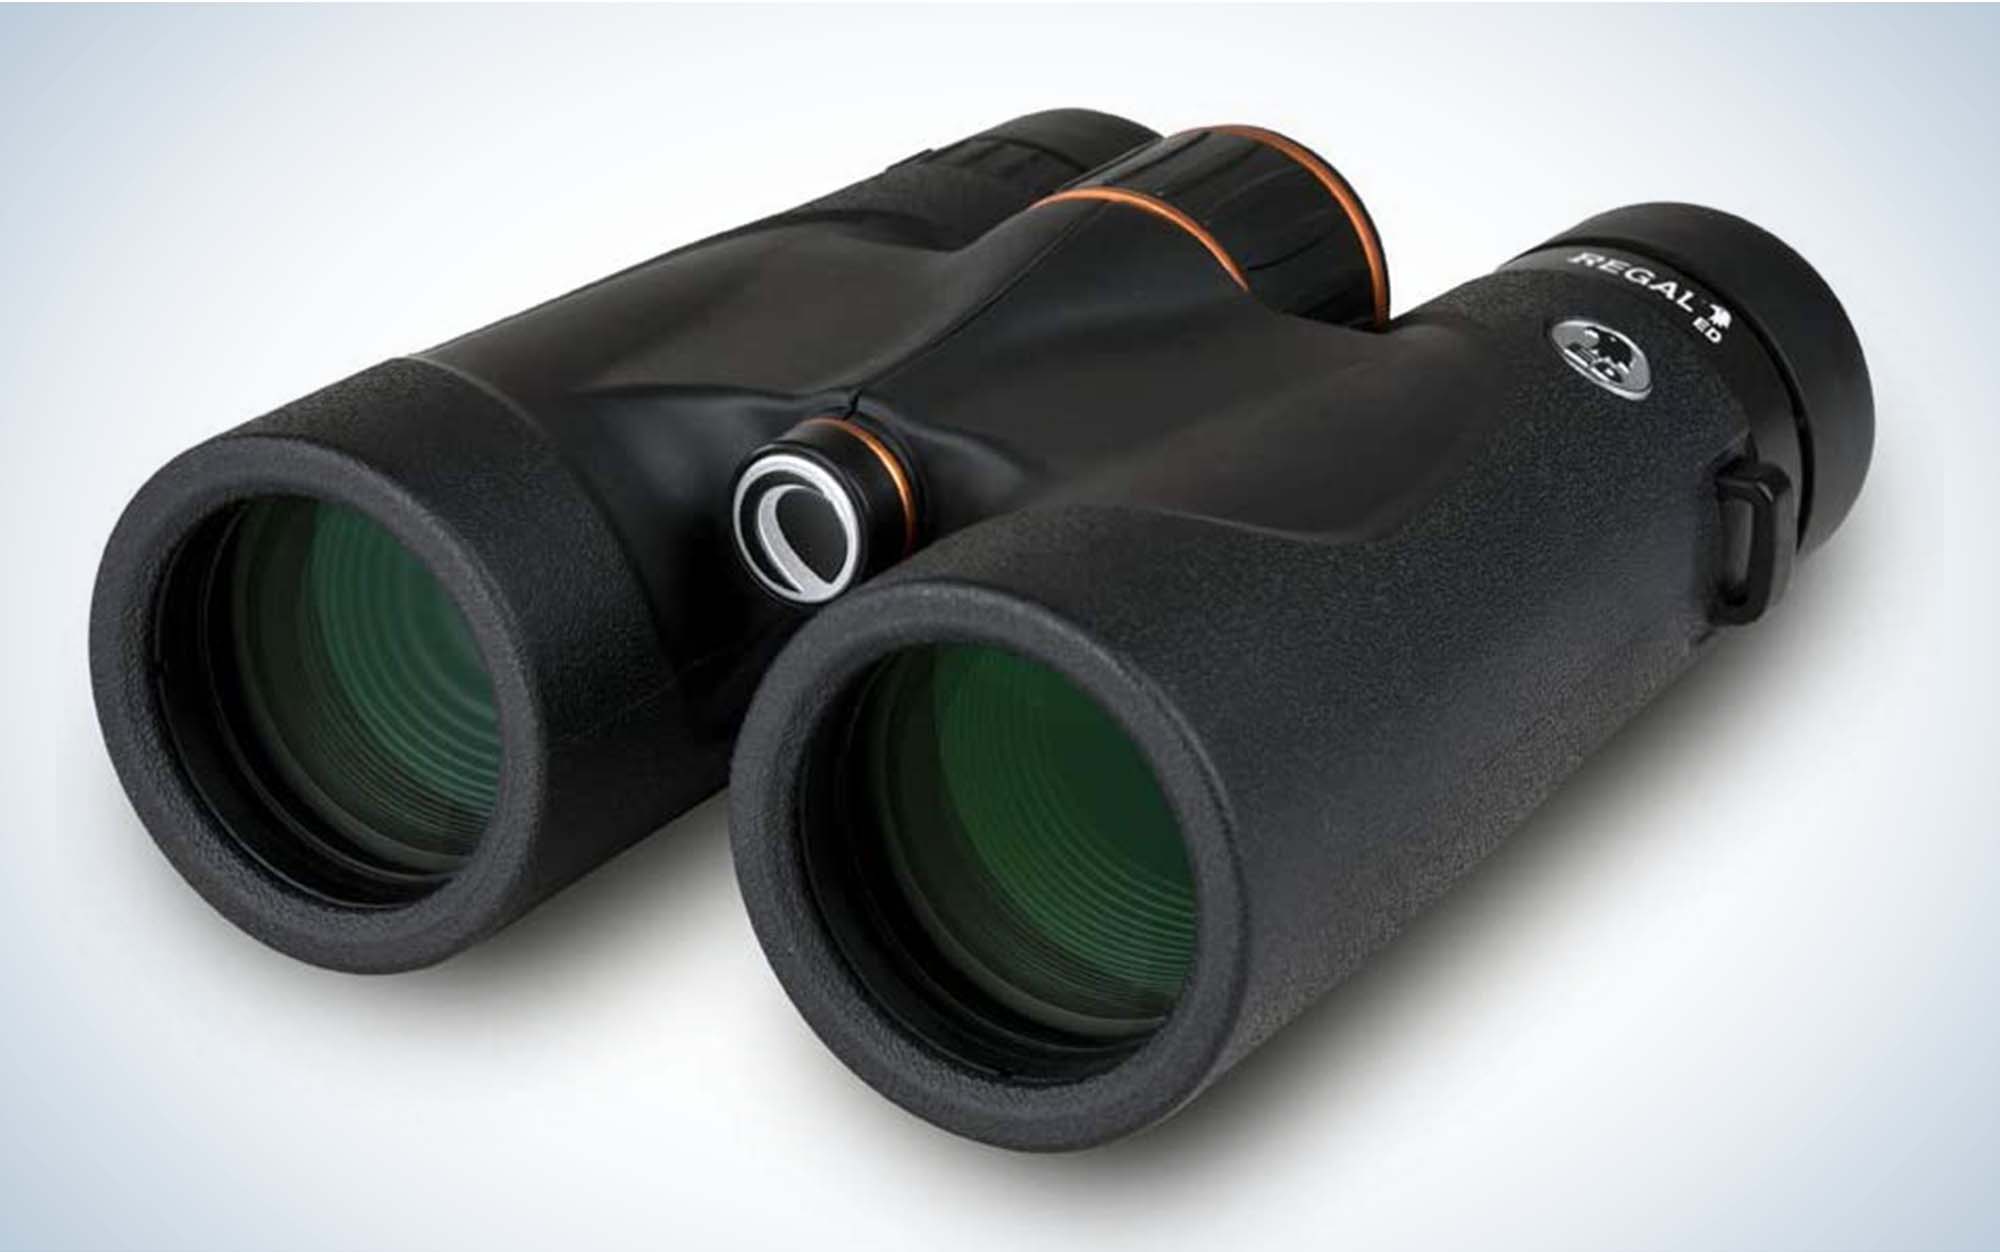 The Celestron Regal ED are 10x42Â binoculars.